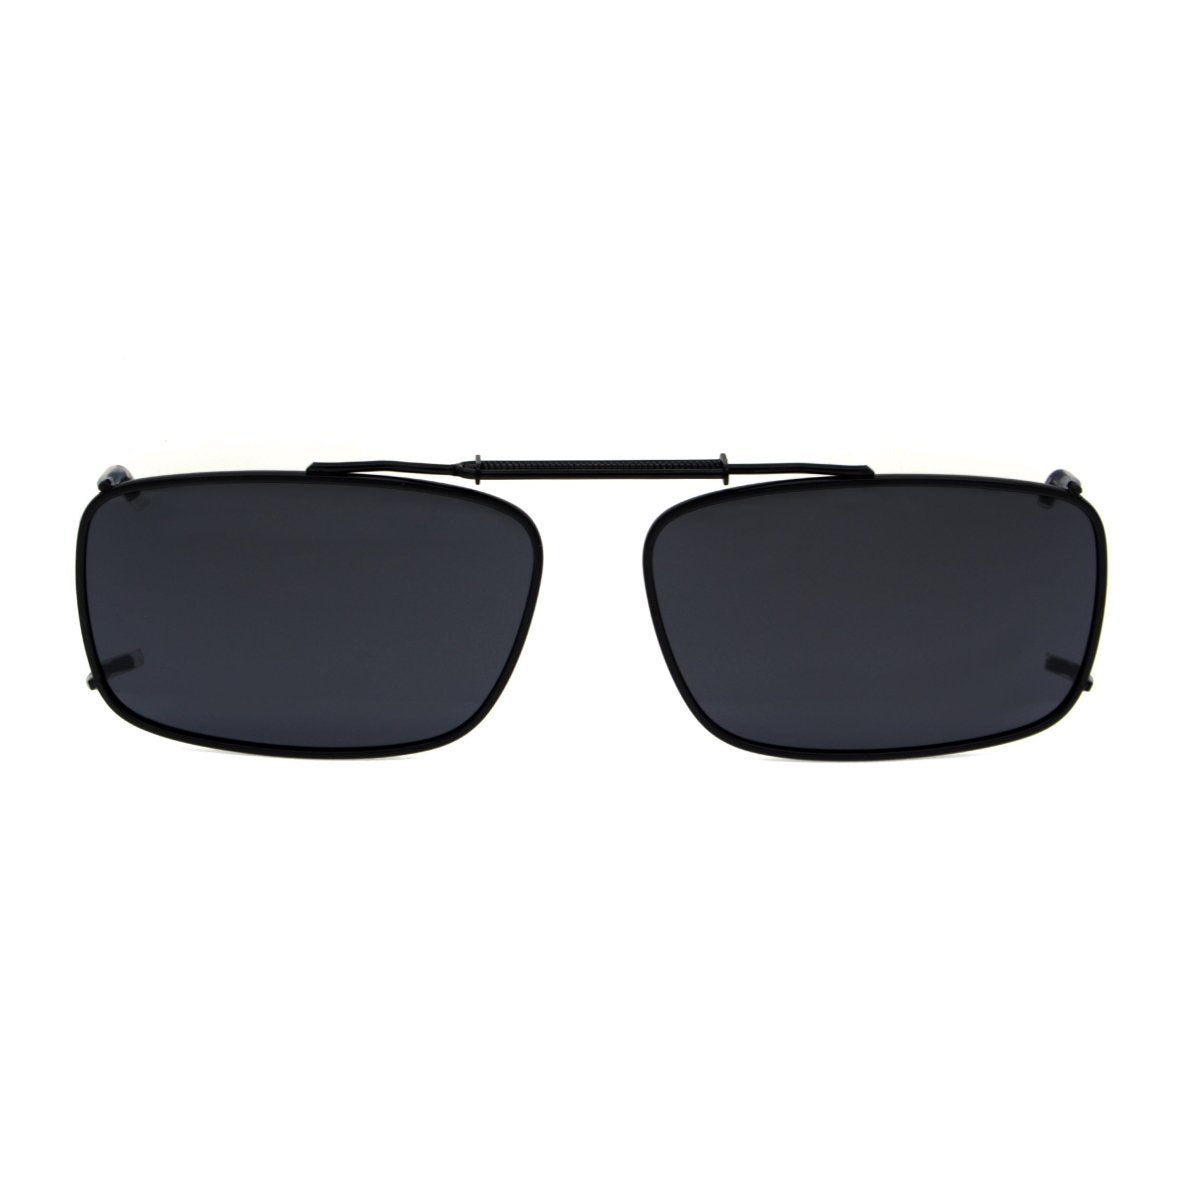 Sonnenbrillen-Clip Fashion für Brillenträger, polarisiert - Ihr  Elektronik-Versand in der Schweiz